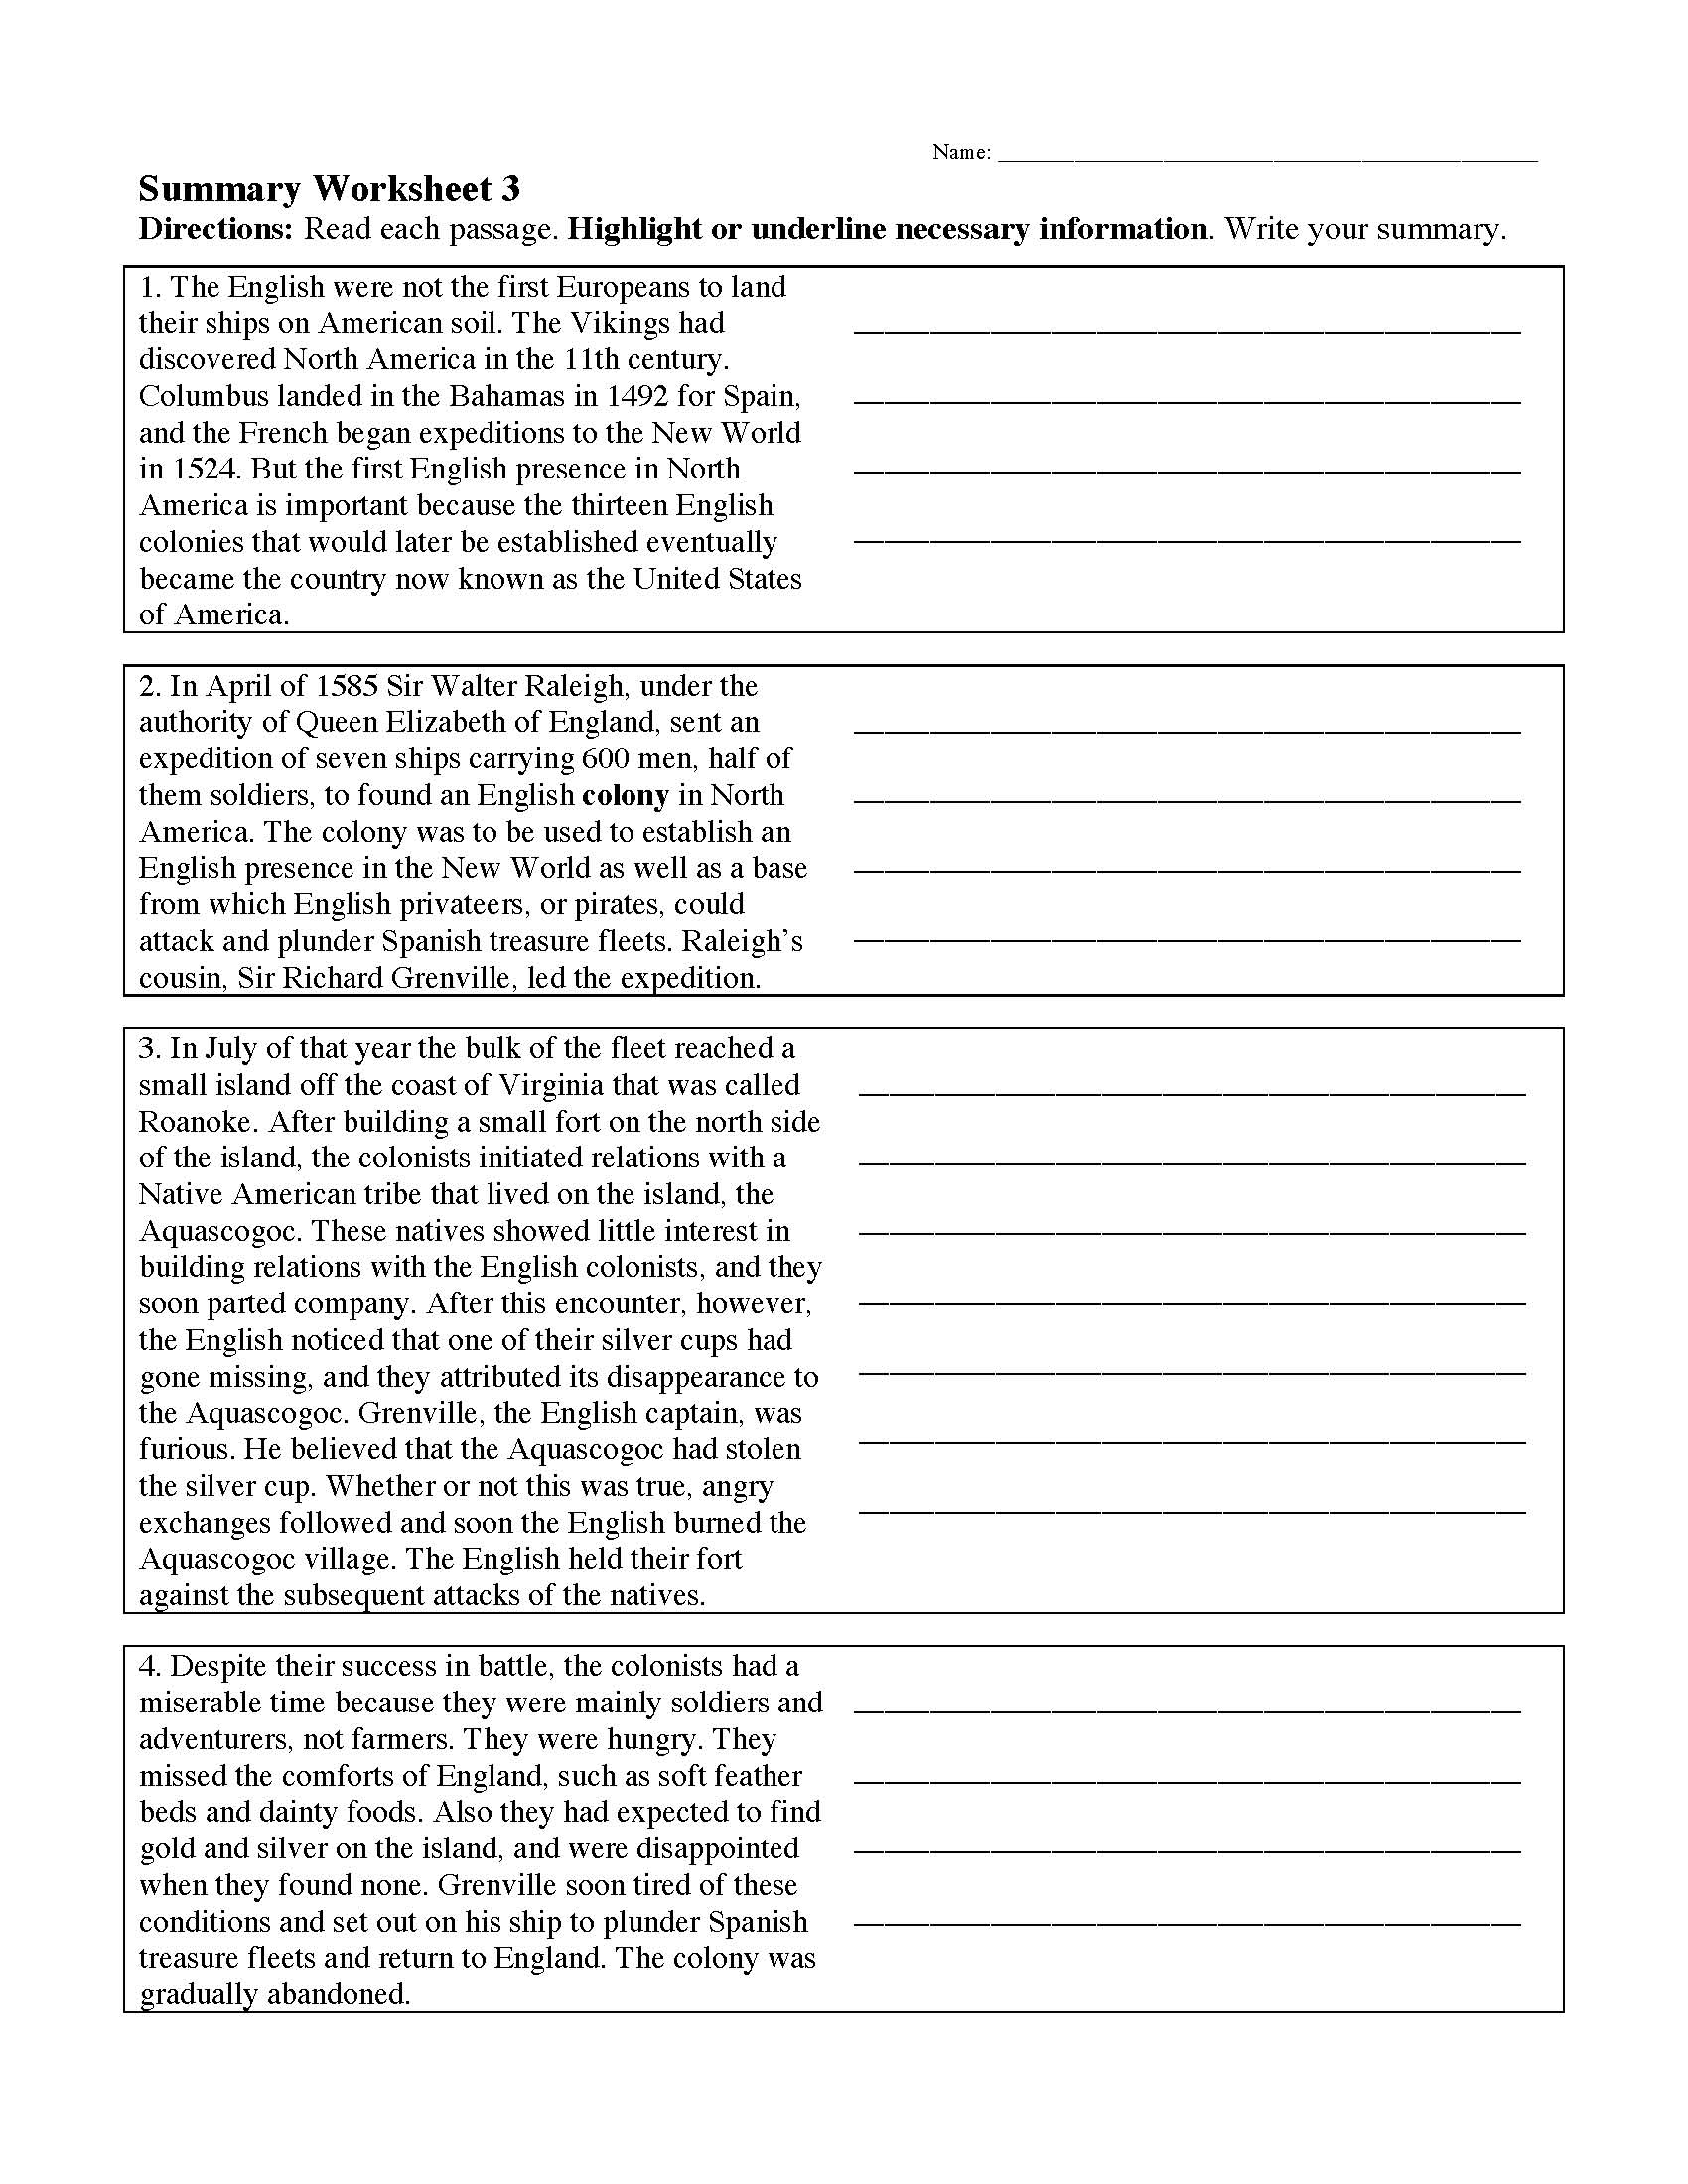 reading comprehension worksheets online or printable